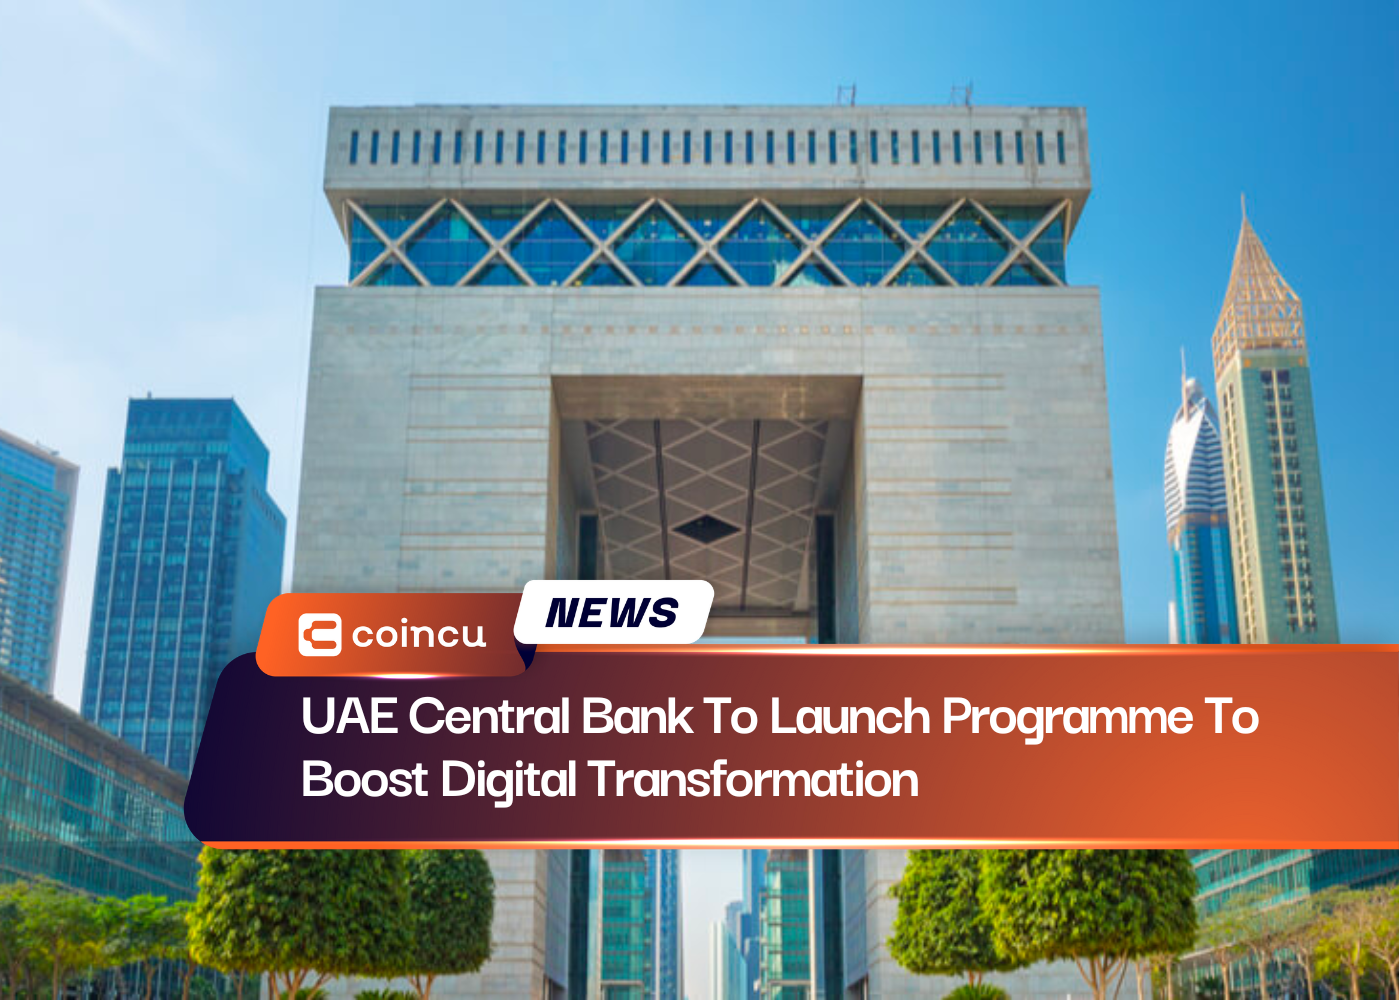 La Banque centrale des Émirats arabes unis va lancer un programme visant à stimuler la transformation numérique